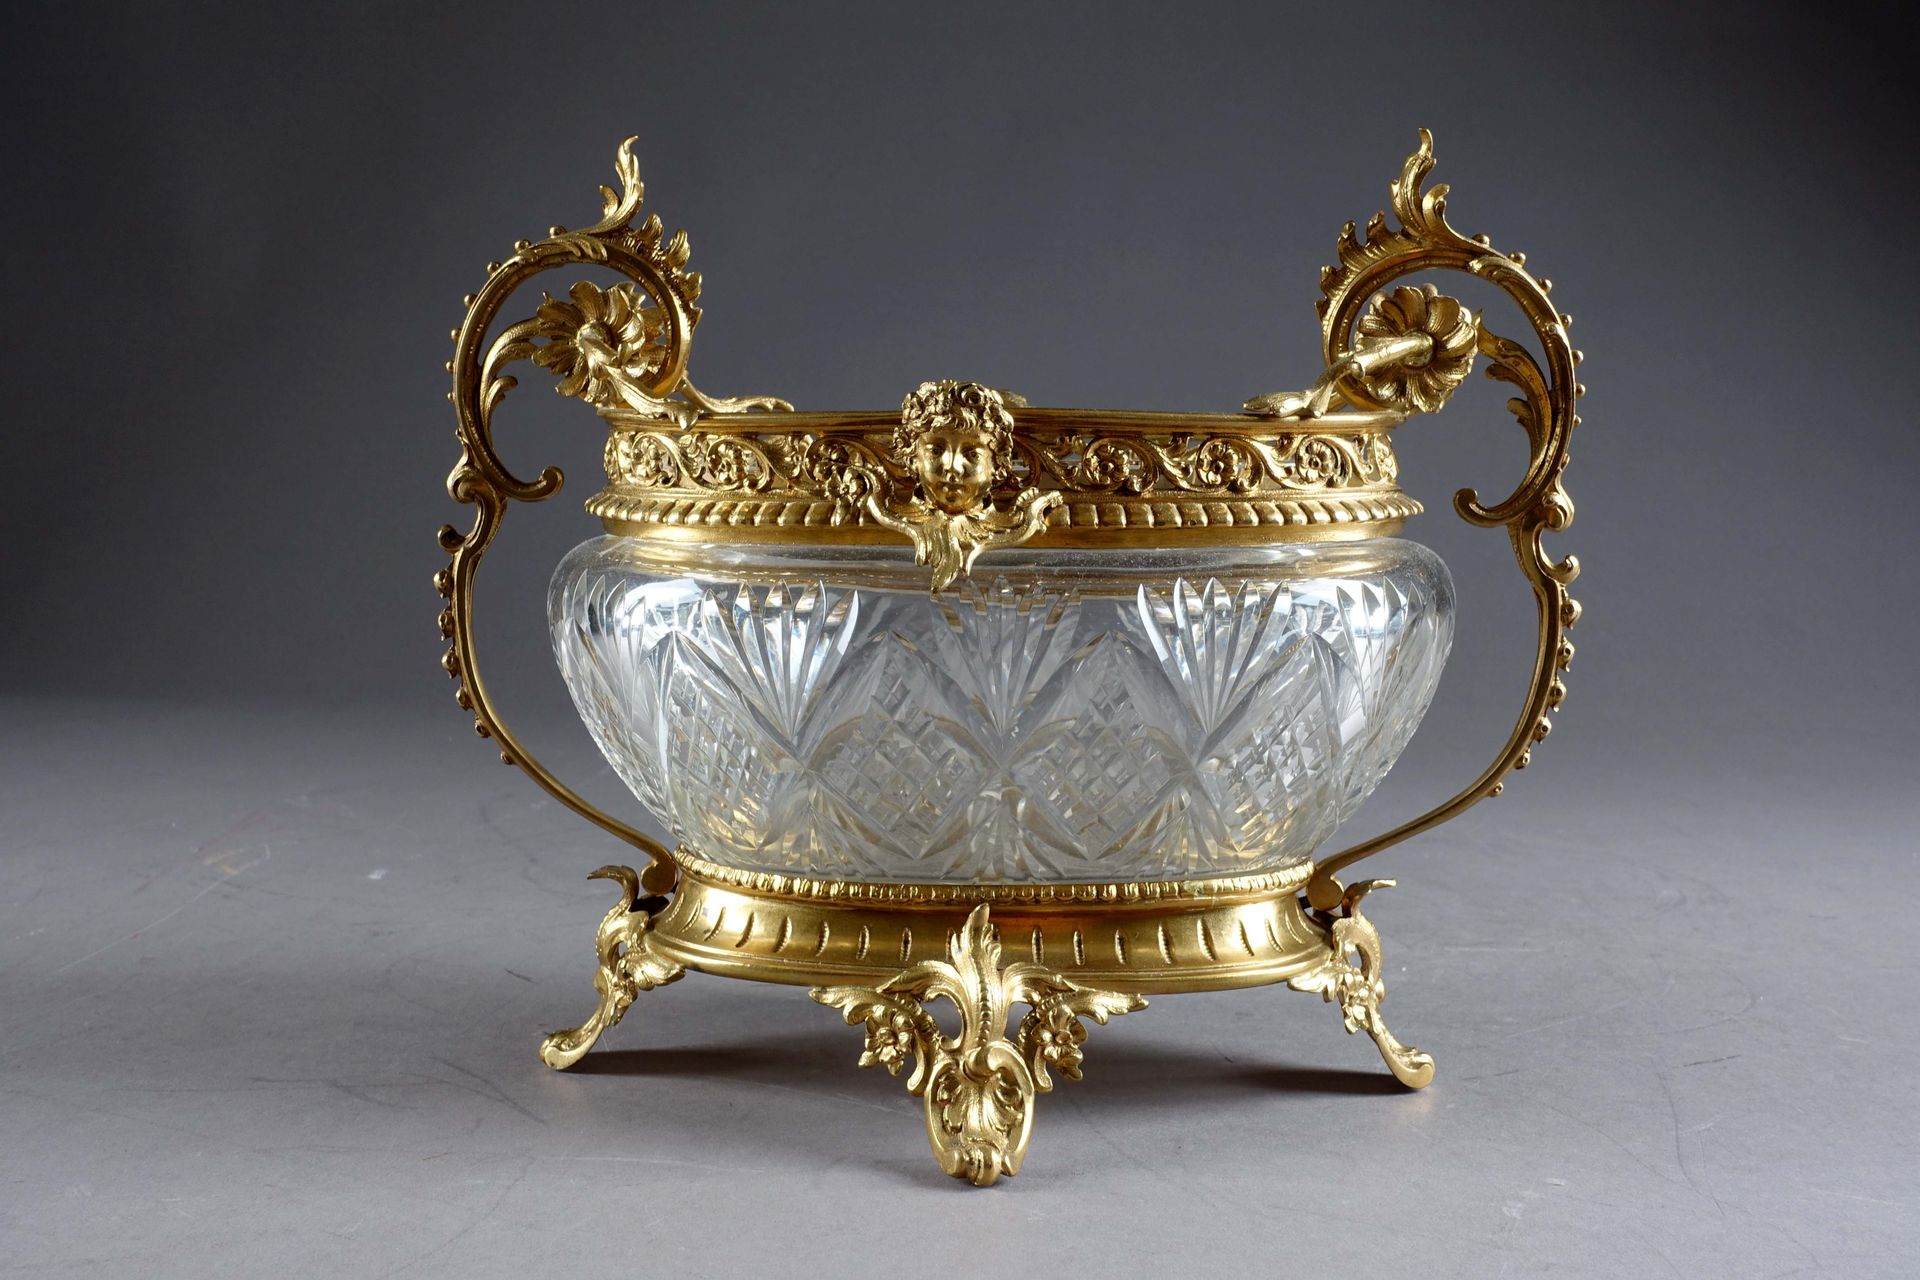 Vase corbeille Napoléon III. Cristal tallado incoloro. Montaje en bronce dorado &hellip;